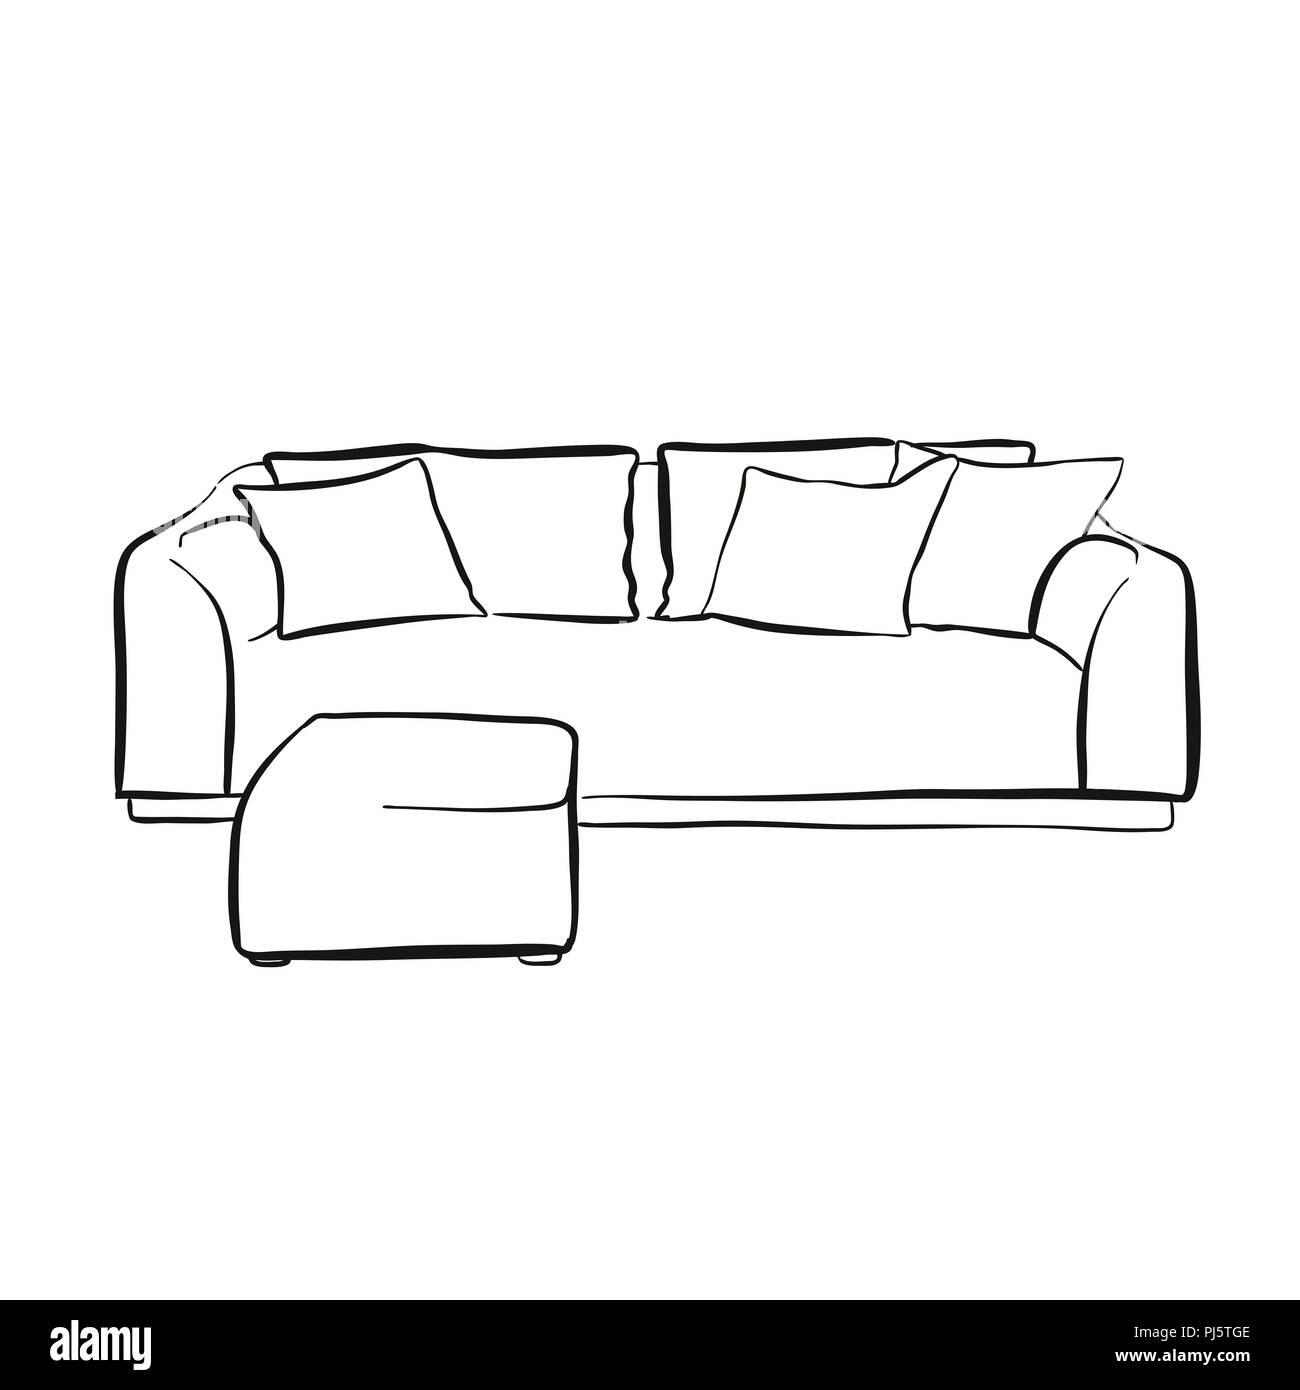 Einfache couch Maßbild. Handgezeichnete vektor Skizze. Business Concept Design. Stockfoto